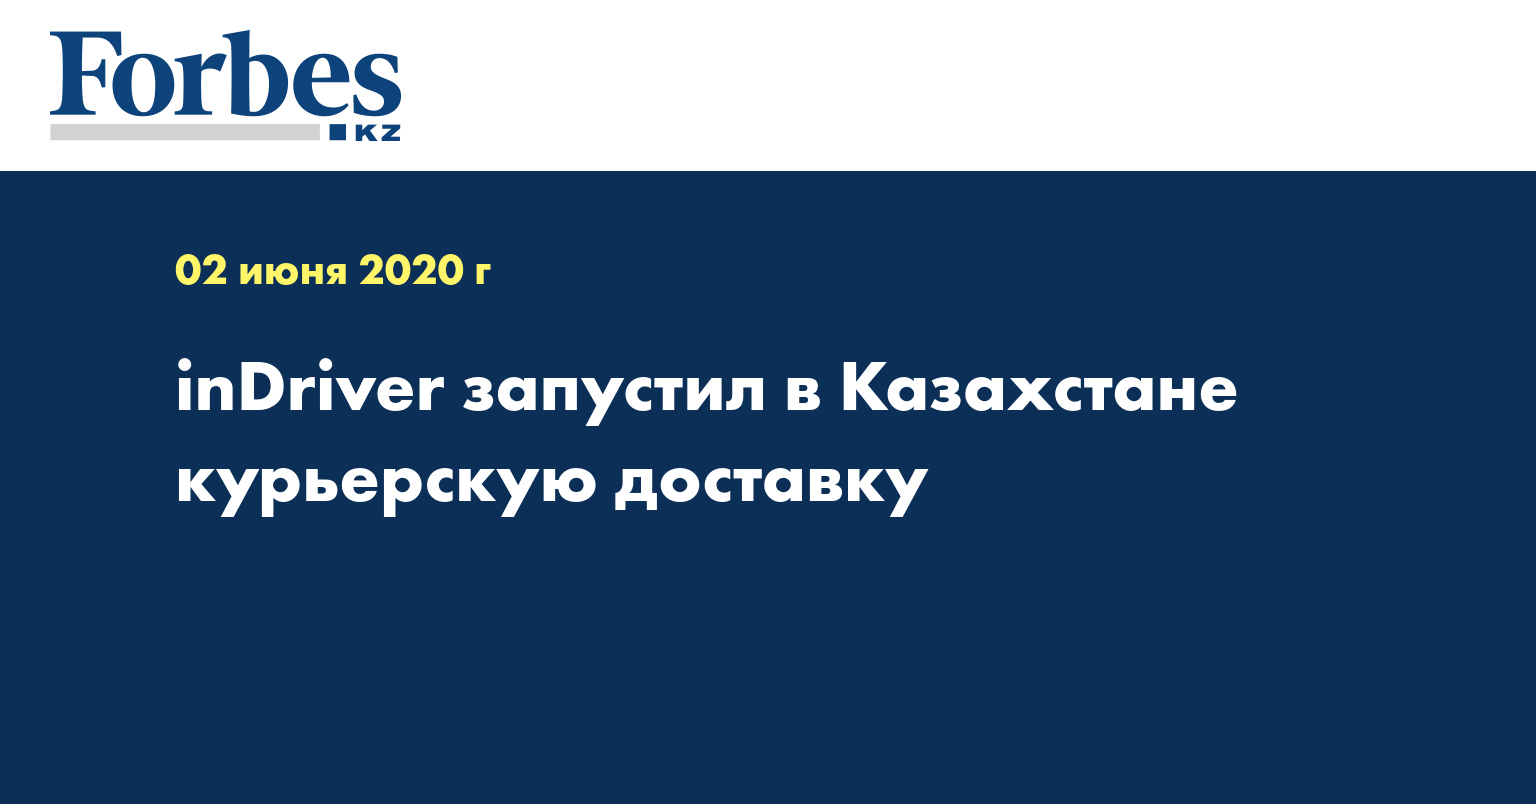 inDriver запустил в Казахстане курьерскую доставку